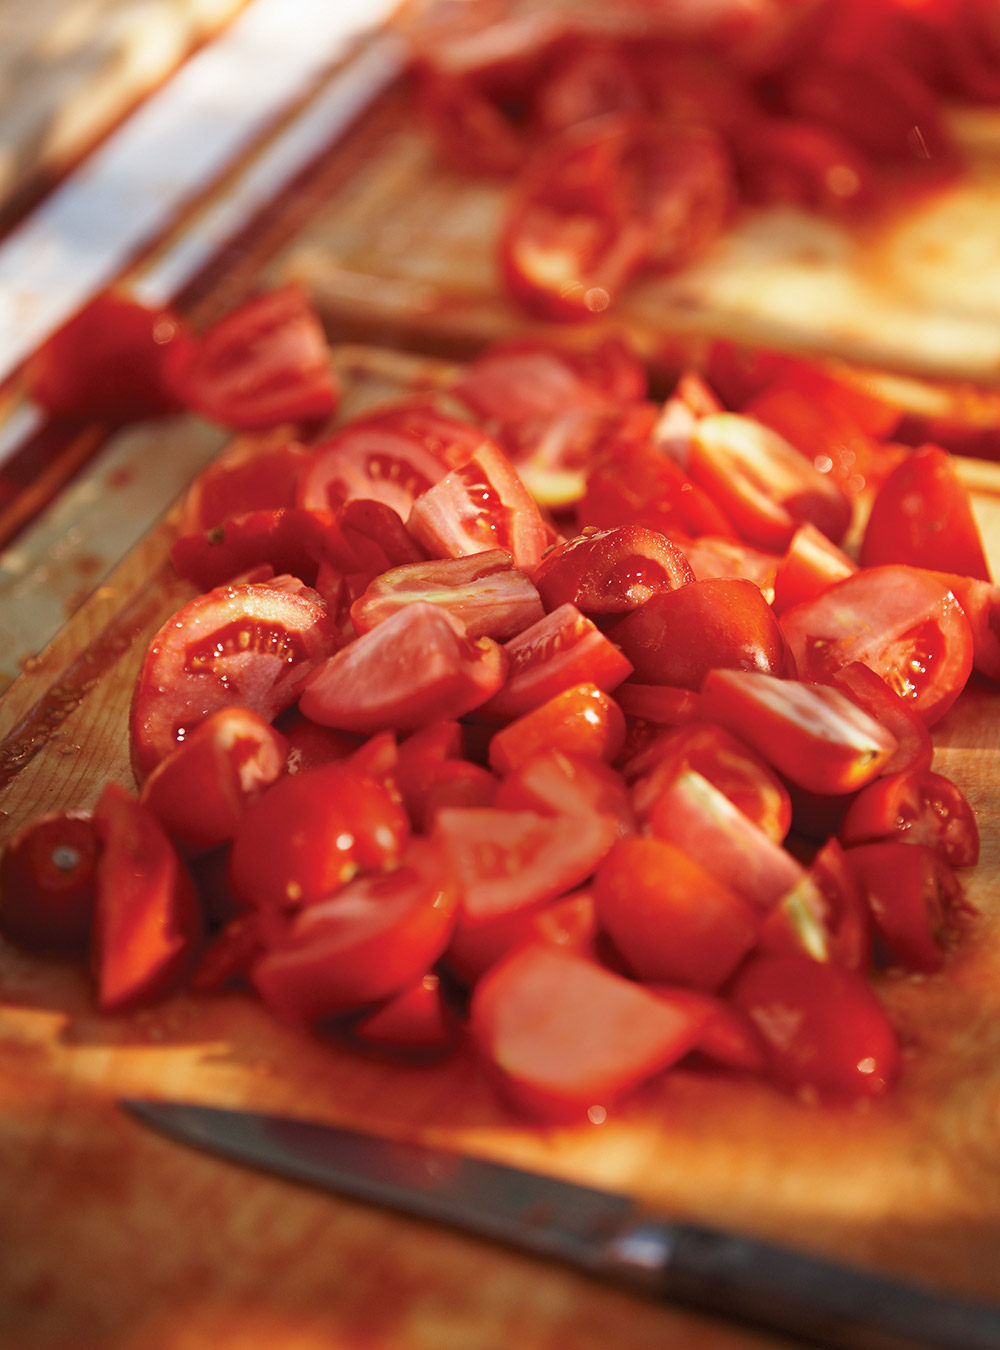 Sauce tomate maison rapide à préparer, Recettes santé